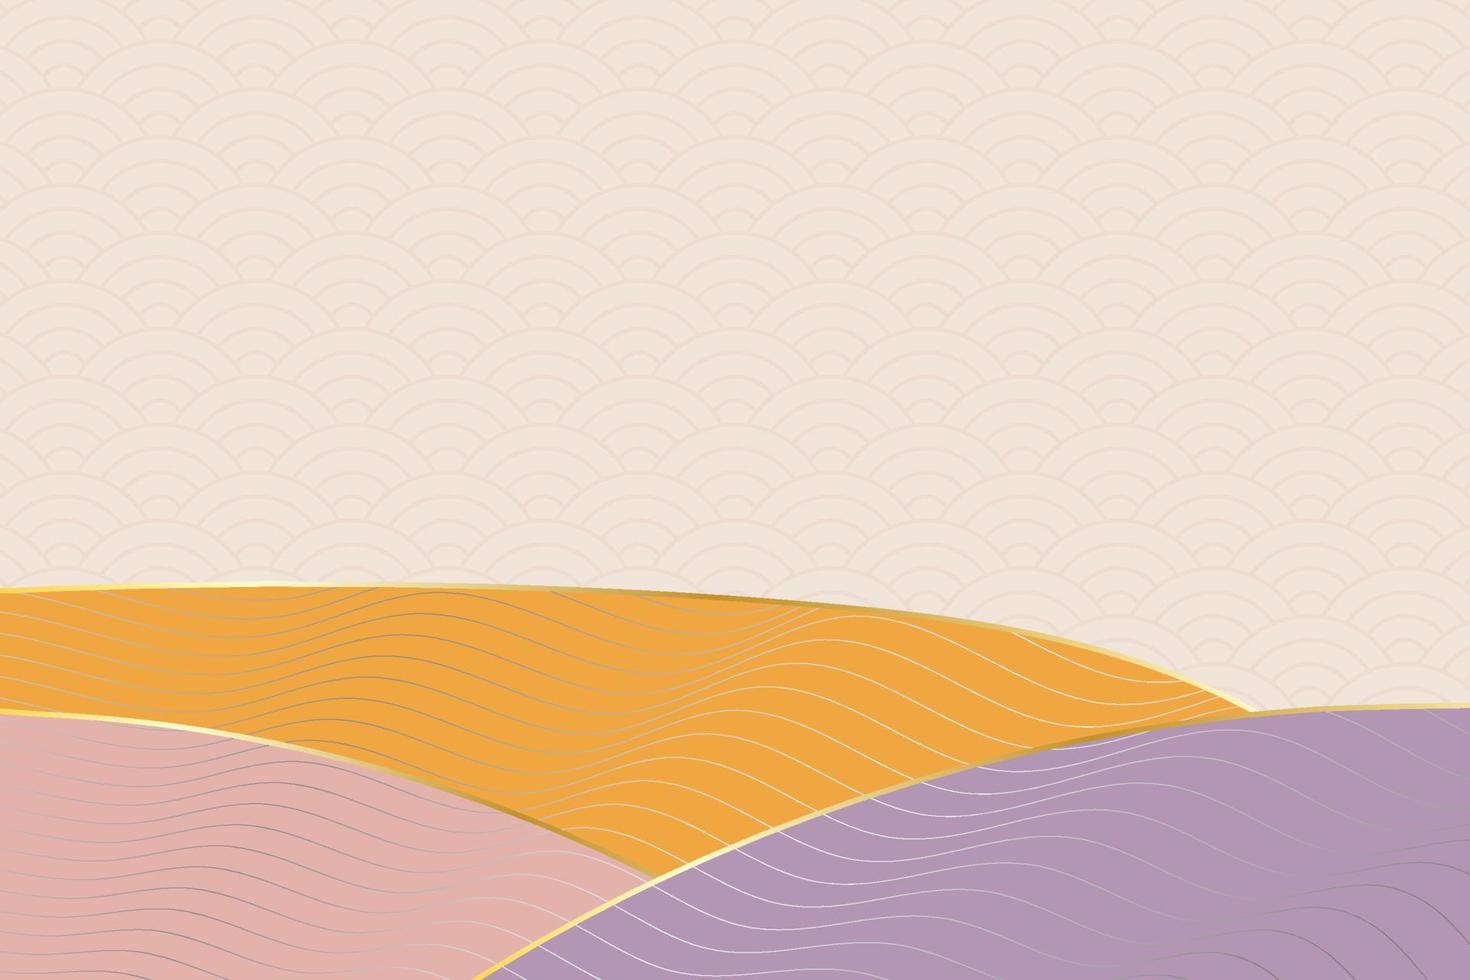 sfondo astratto stile onda con motivo geometrico giapponese e linee ondulate a strisce vettore